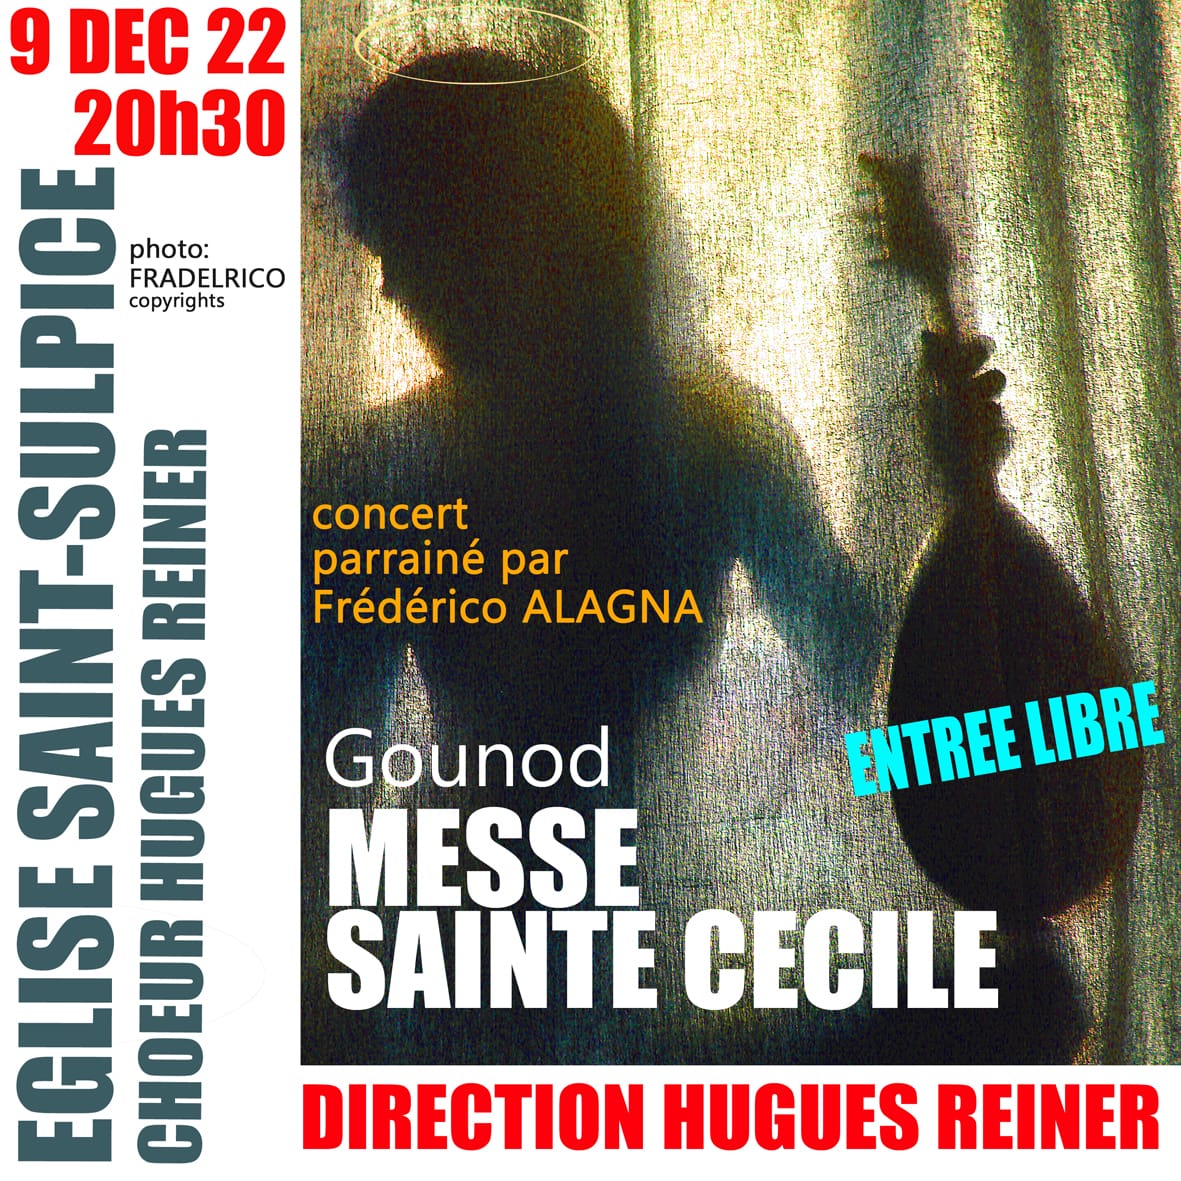 9 déc 2022 Gounod à St Sulpice